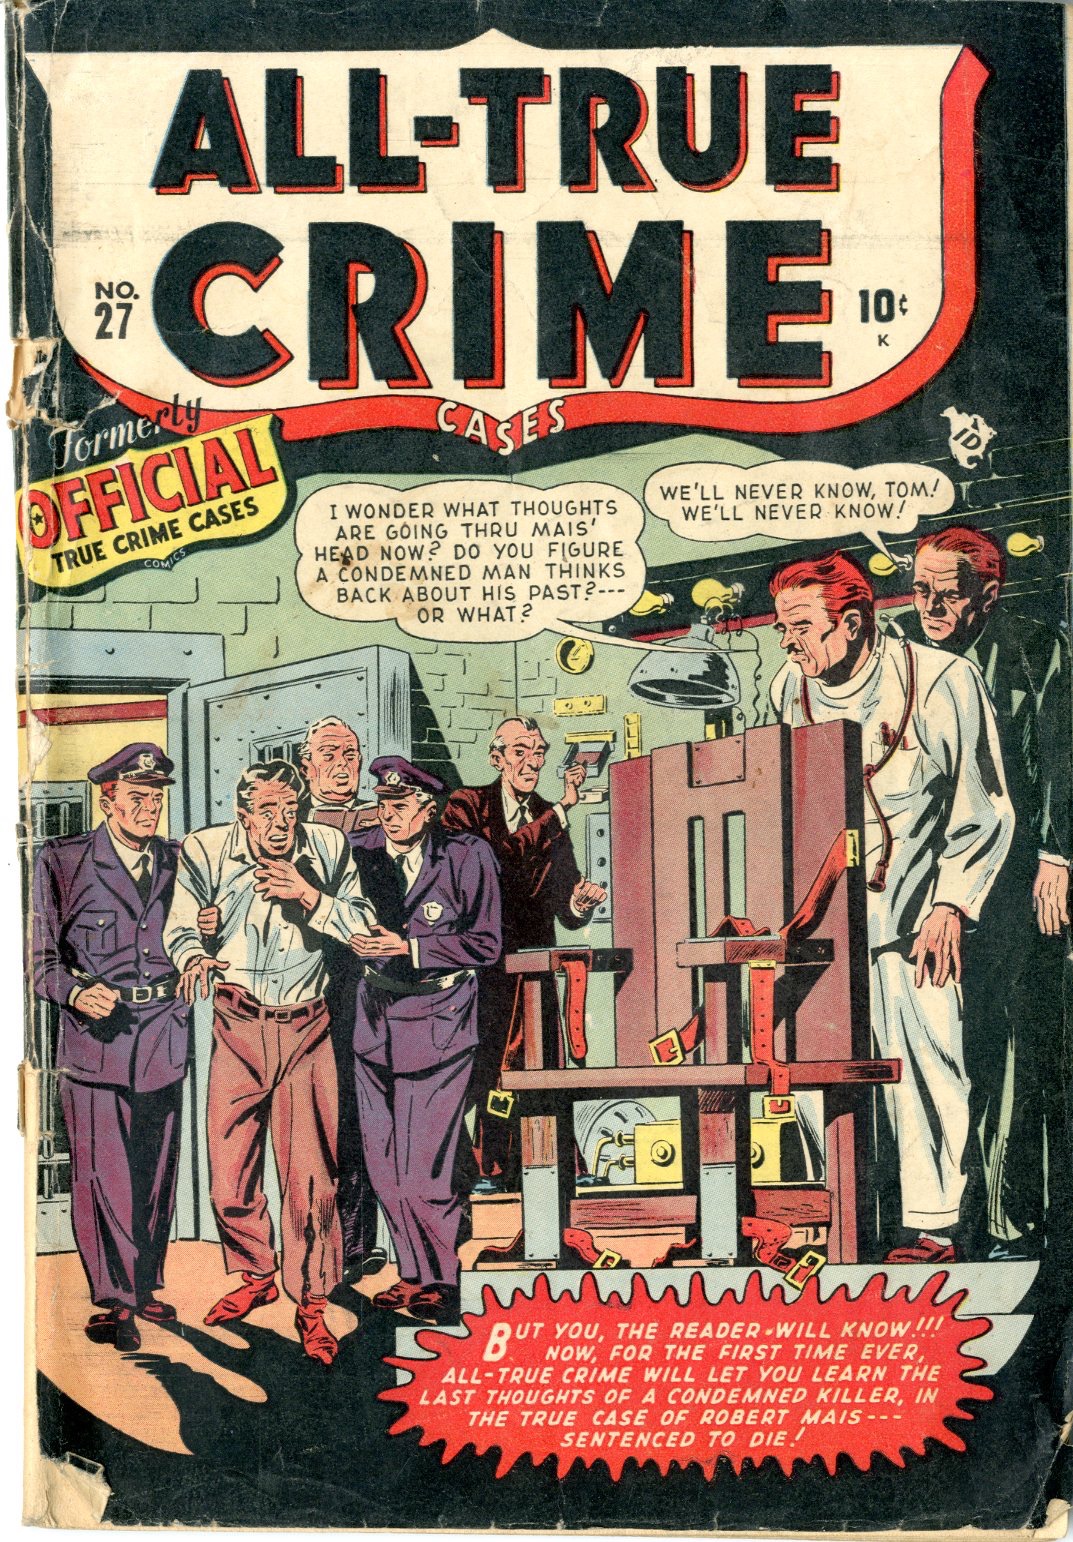 All True Crime - Primary